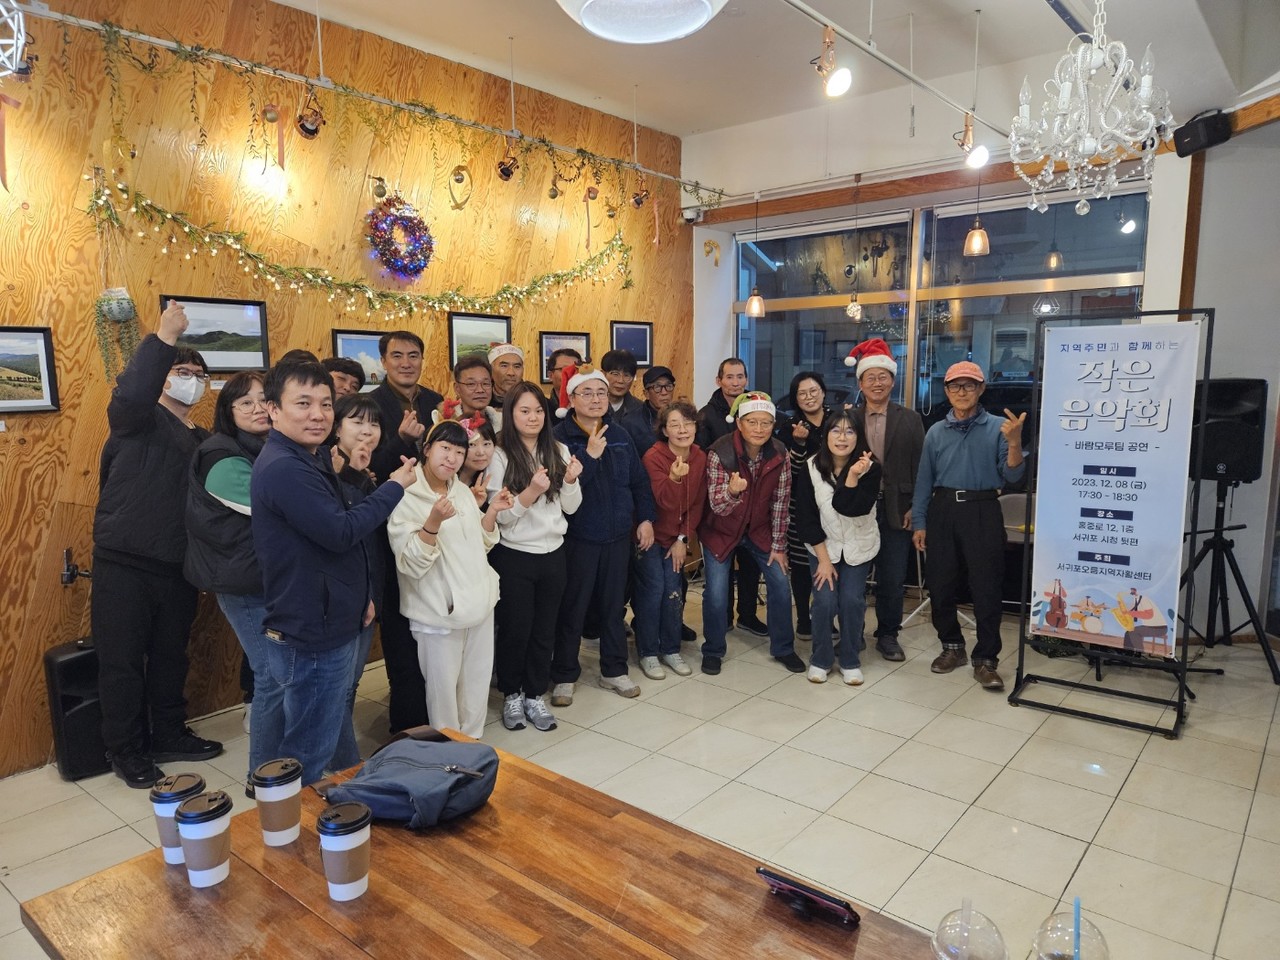 지난 8일 서홍동에 위치한 ‘시청 뒤에서’카페에서 지역주민 50여명과 함께하는 작은 음악회가 열렸다.